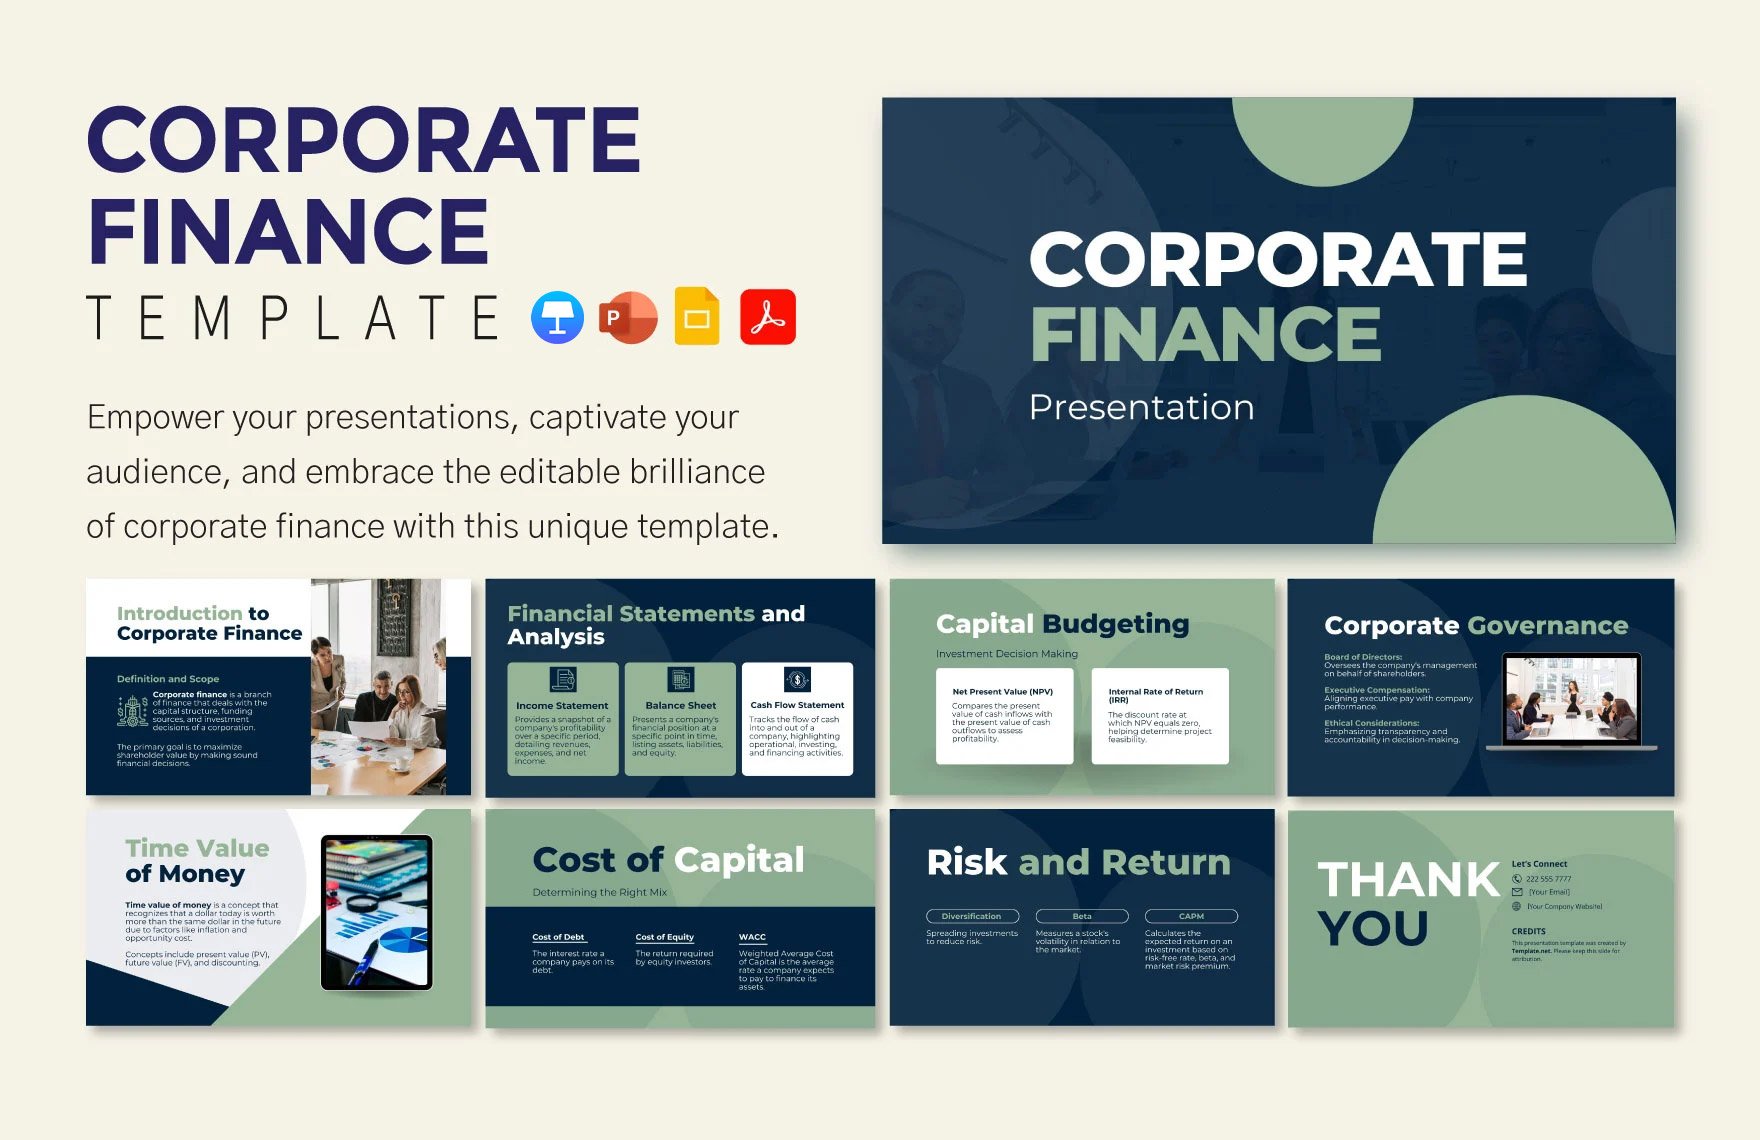 Corporate Finance Template